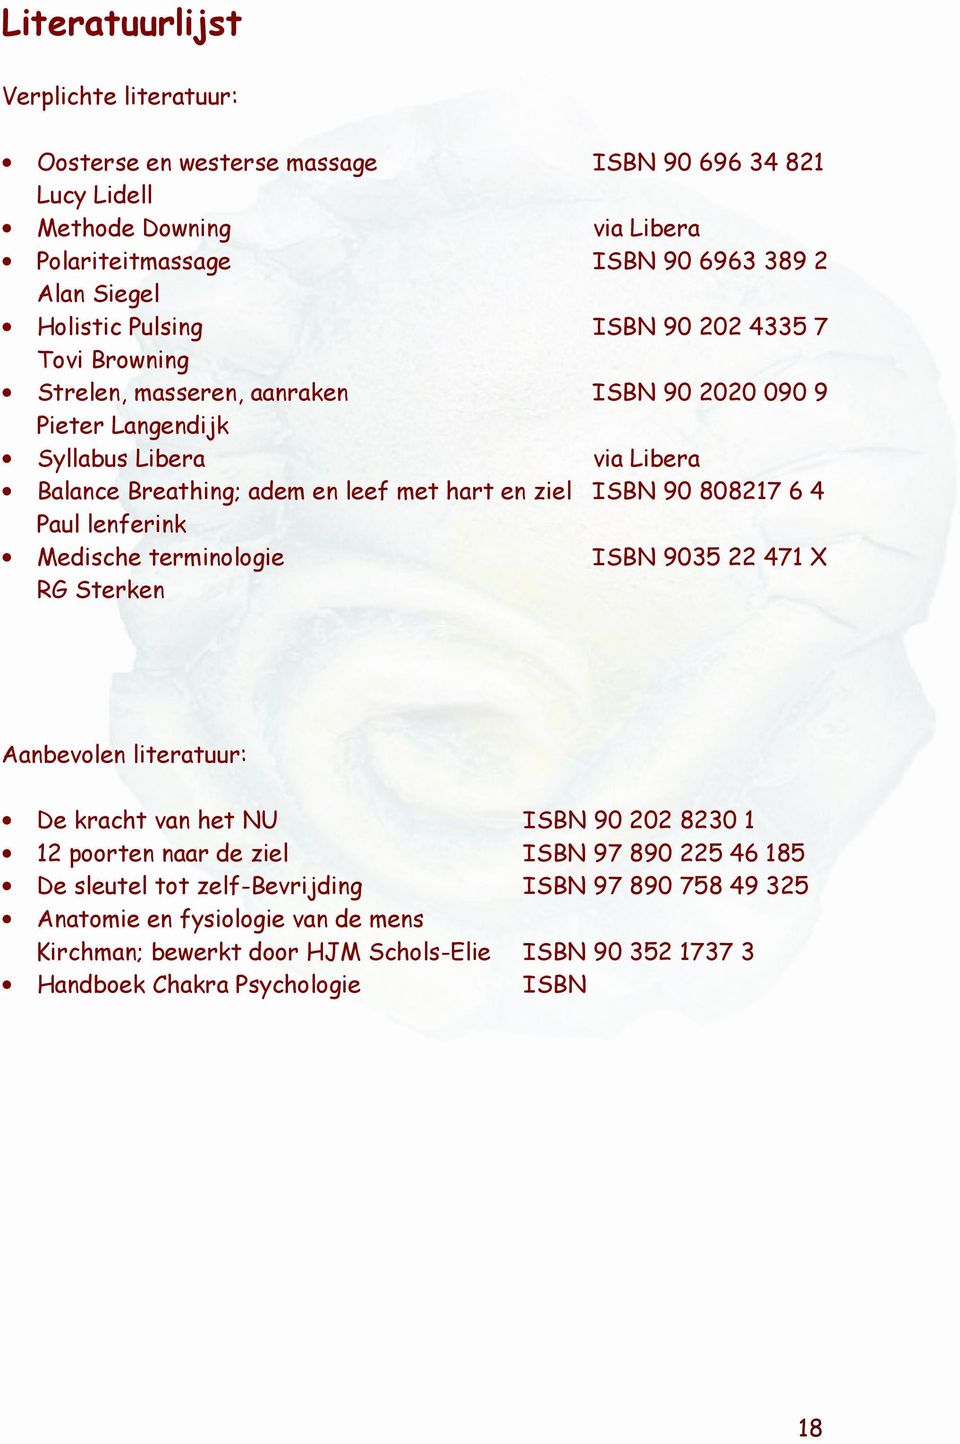 ISBN 90 808217 6 4 Paul lenferink Medische terminologie ISBN 9035 22 471 X RG Sterken Aanbevolen literatuur: De kracht van het NU ISBN 90 202 8230 1 12 poorten naar de ziel ISBN 97 890